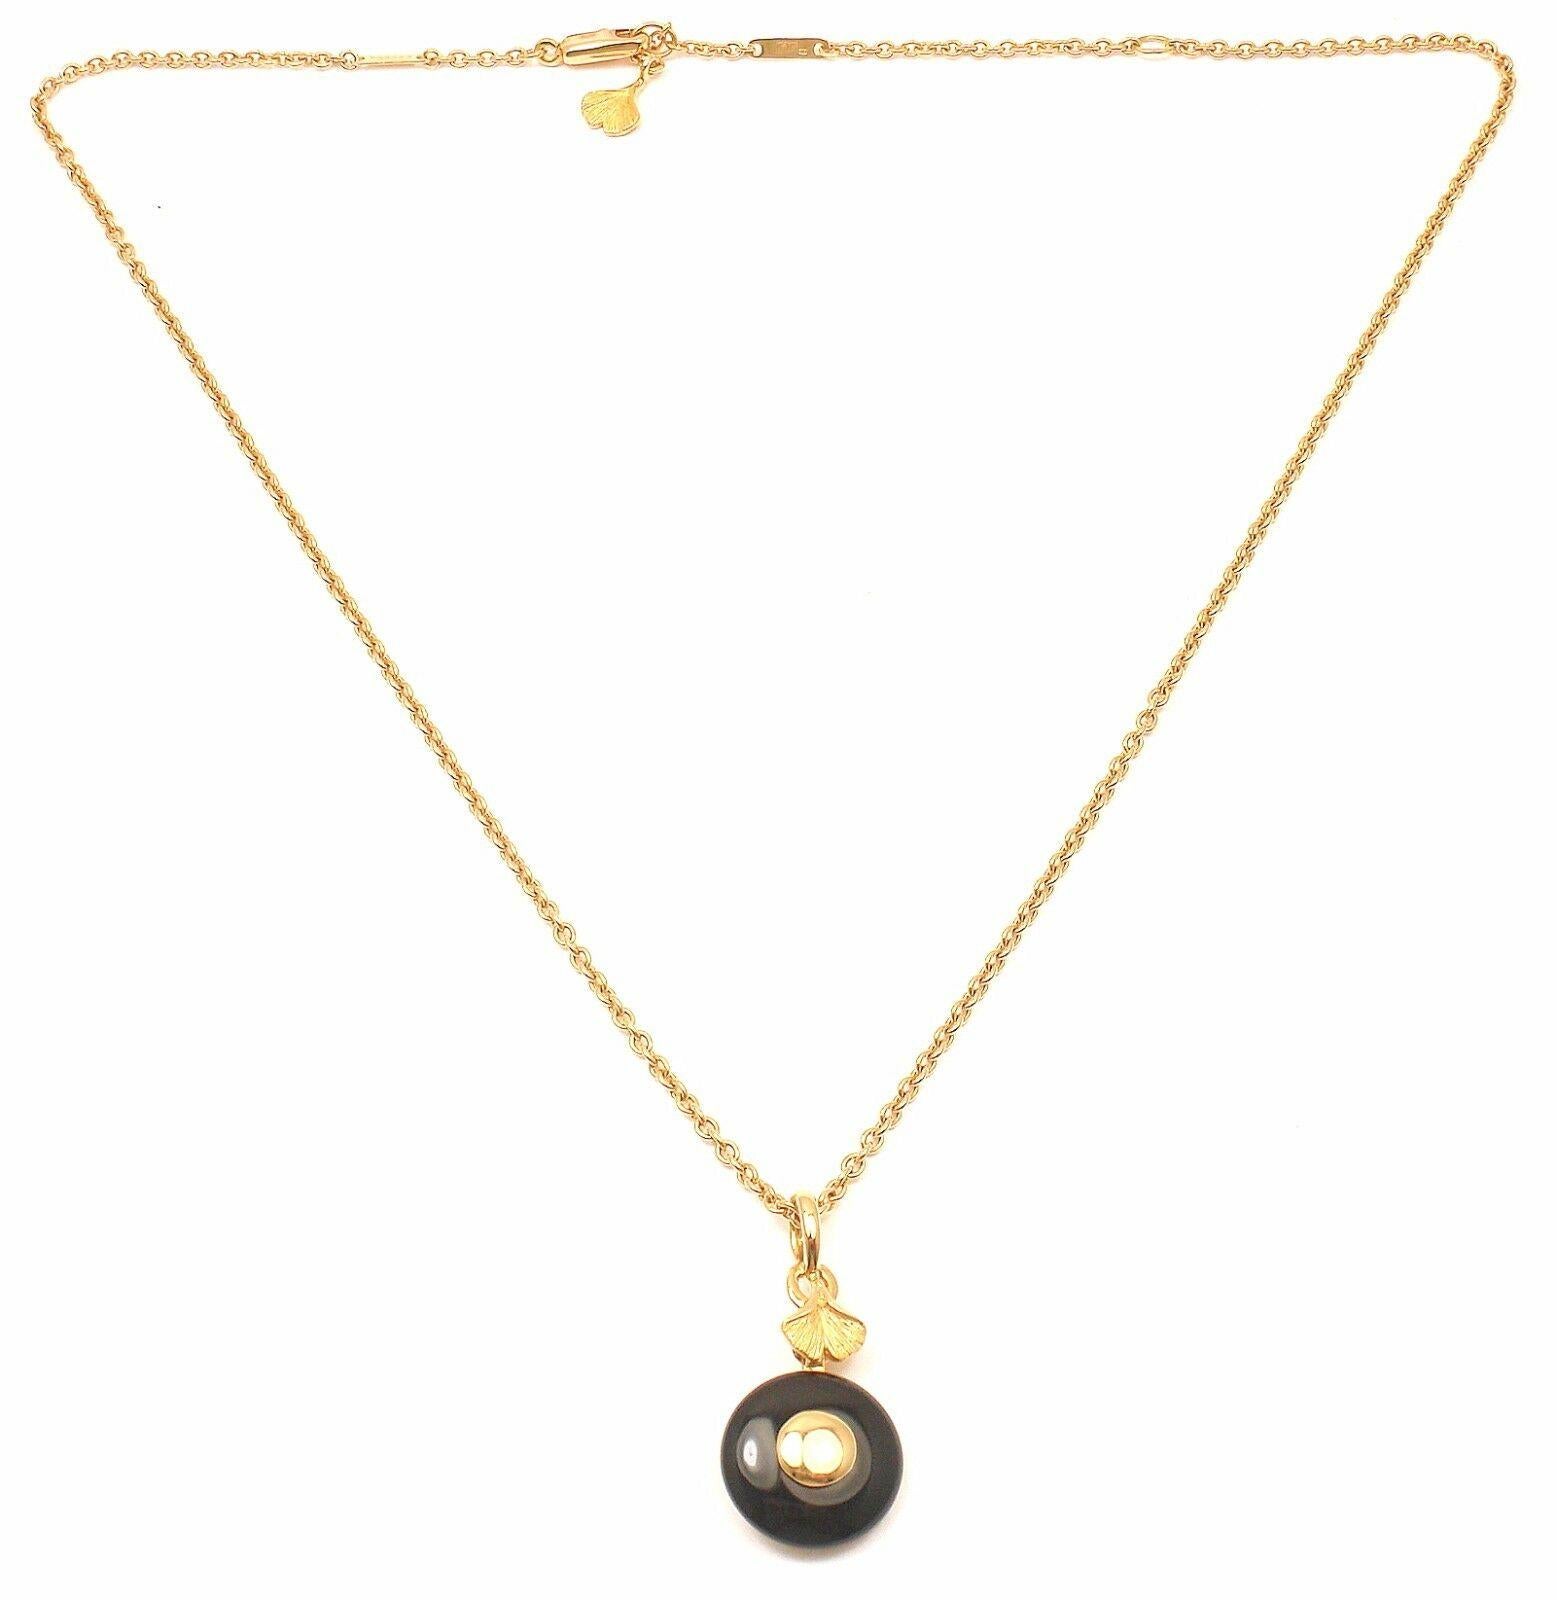 18k Gelbgold Schwarz Onyx Ginkgo Anhänger Halskette von Carrera Y Carrera.
Einzelheiten:
Abmessungen:
Gewicht: 10,2 Gramm
Länge: 18